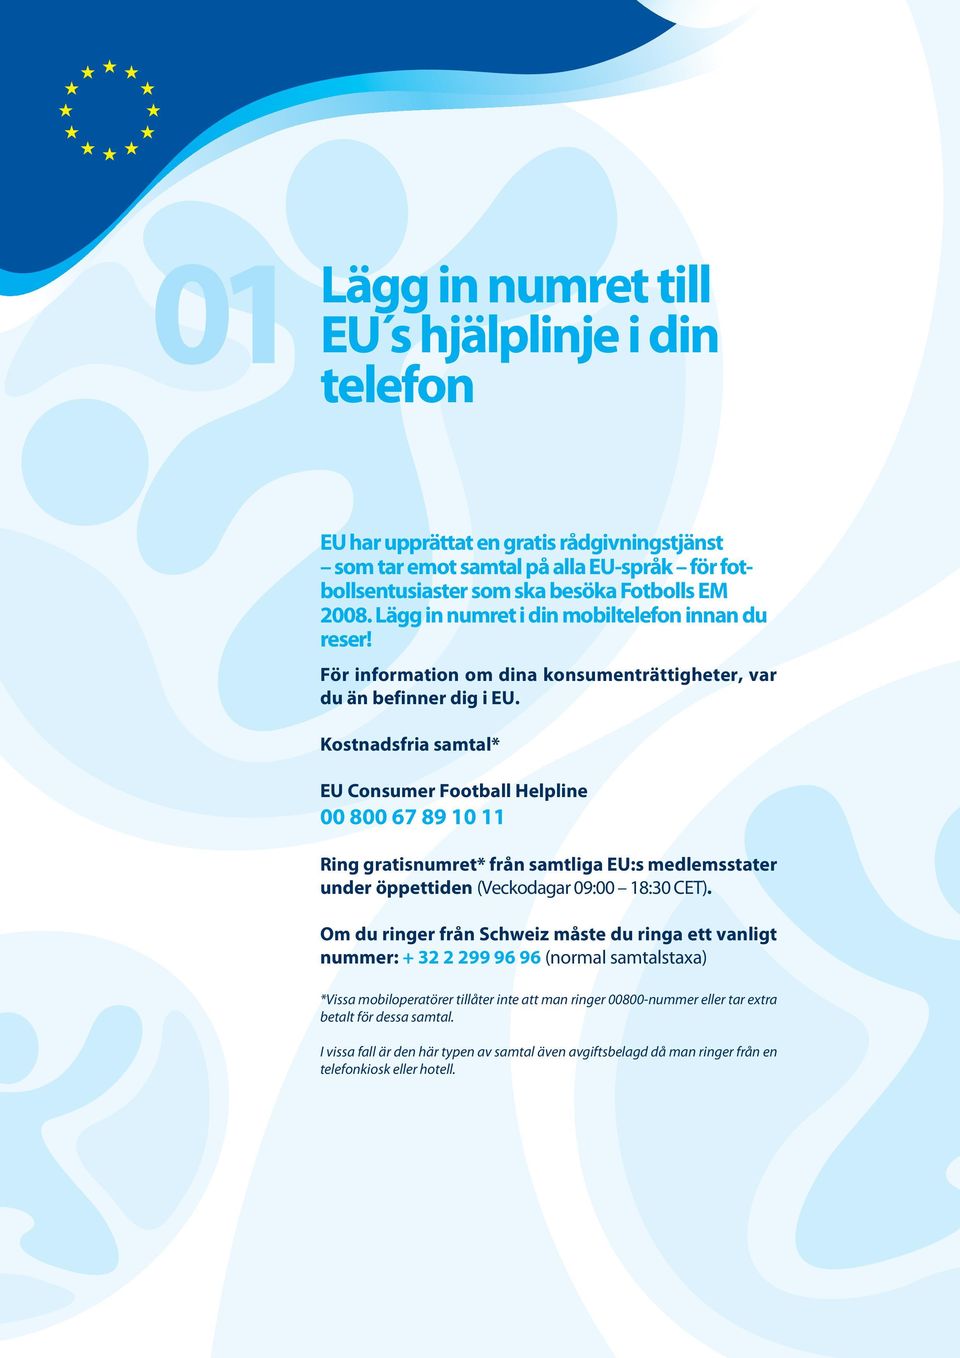 Kostnadsfria samtal* EU Consumer Football Helpline 00 800 67 89 10 11 Ring gratisnumret* från samtliga EU:s medlemsstater under öppettiden (Veckodagar 09:00 18:30 CET).